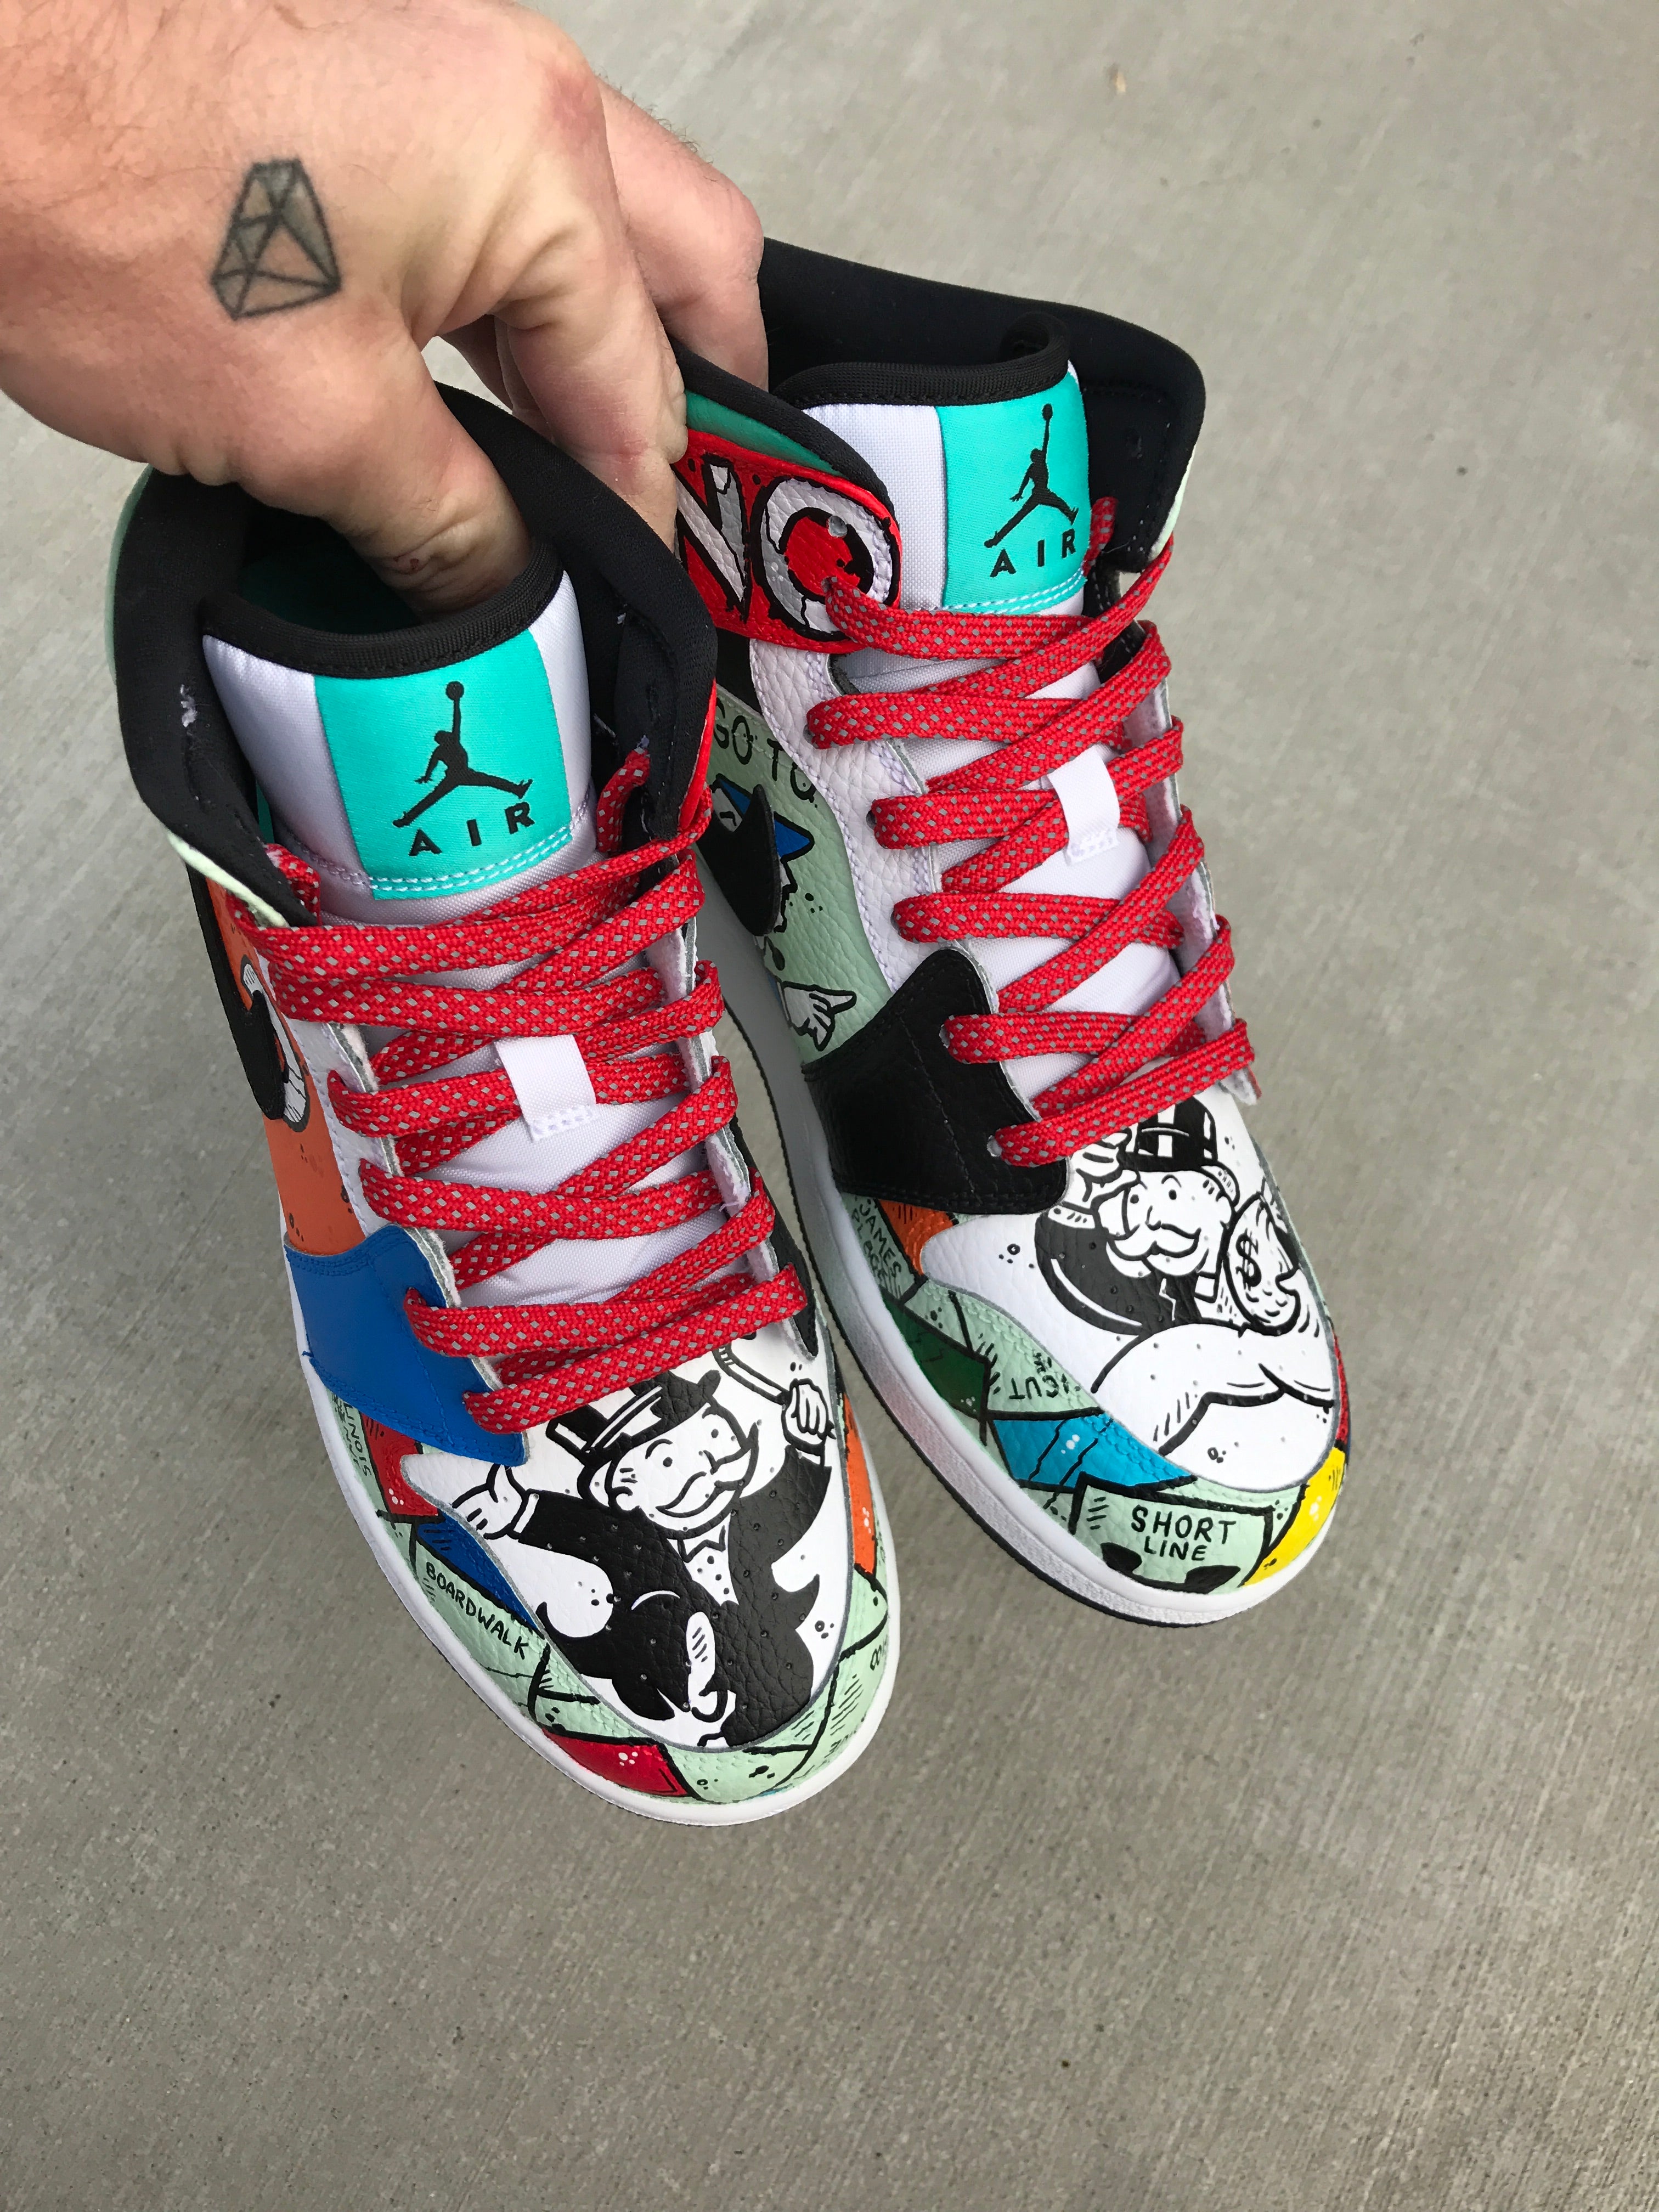 Demon Slayers Daki Air Jordan 13 Anime Shoes Gift For Fans - Freedomdesign